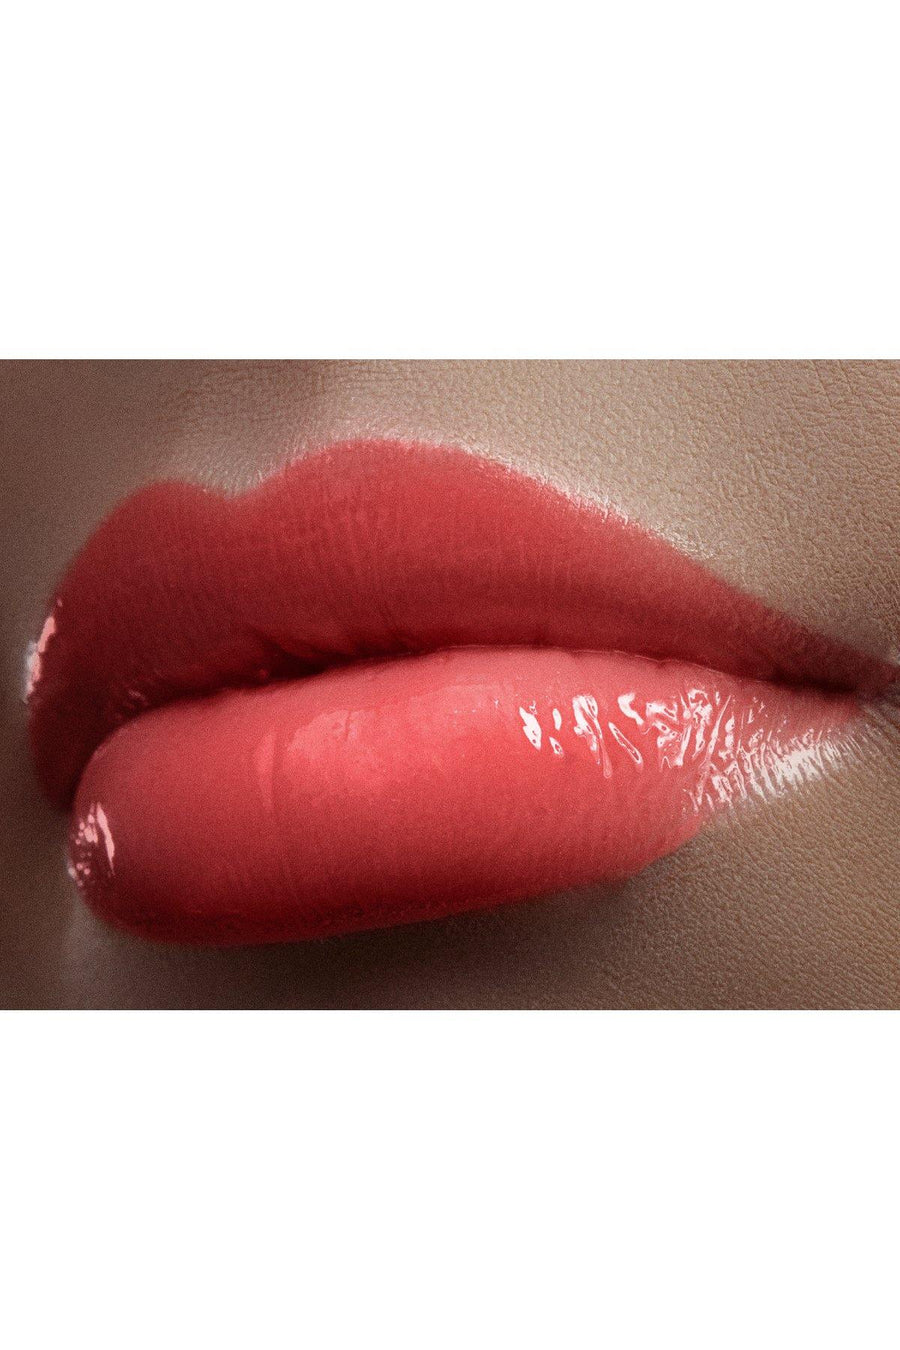 Lip Gloss #9 - Apple Fatal - Blend Mineral Cosmetics